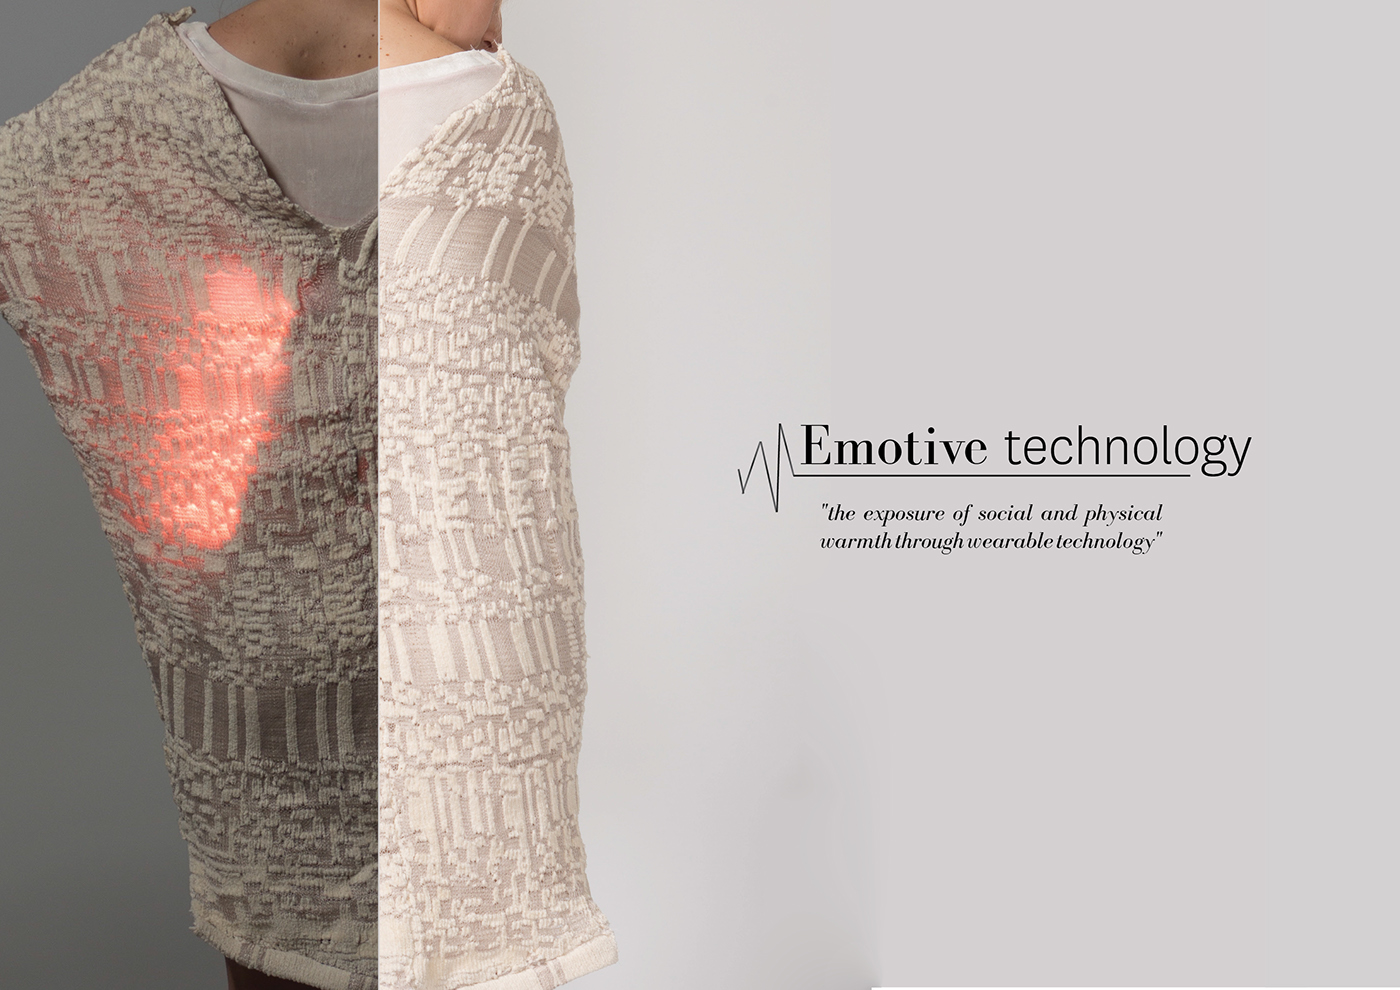 Wearable Technology emotive designs affective technology digital media lilypad development board Arduino wearables knitwear living knitwear